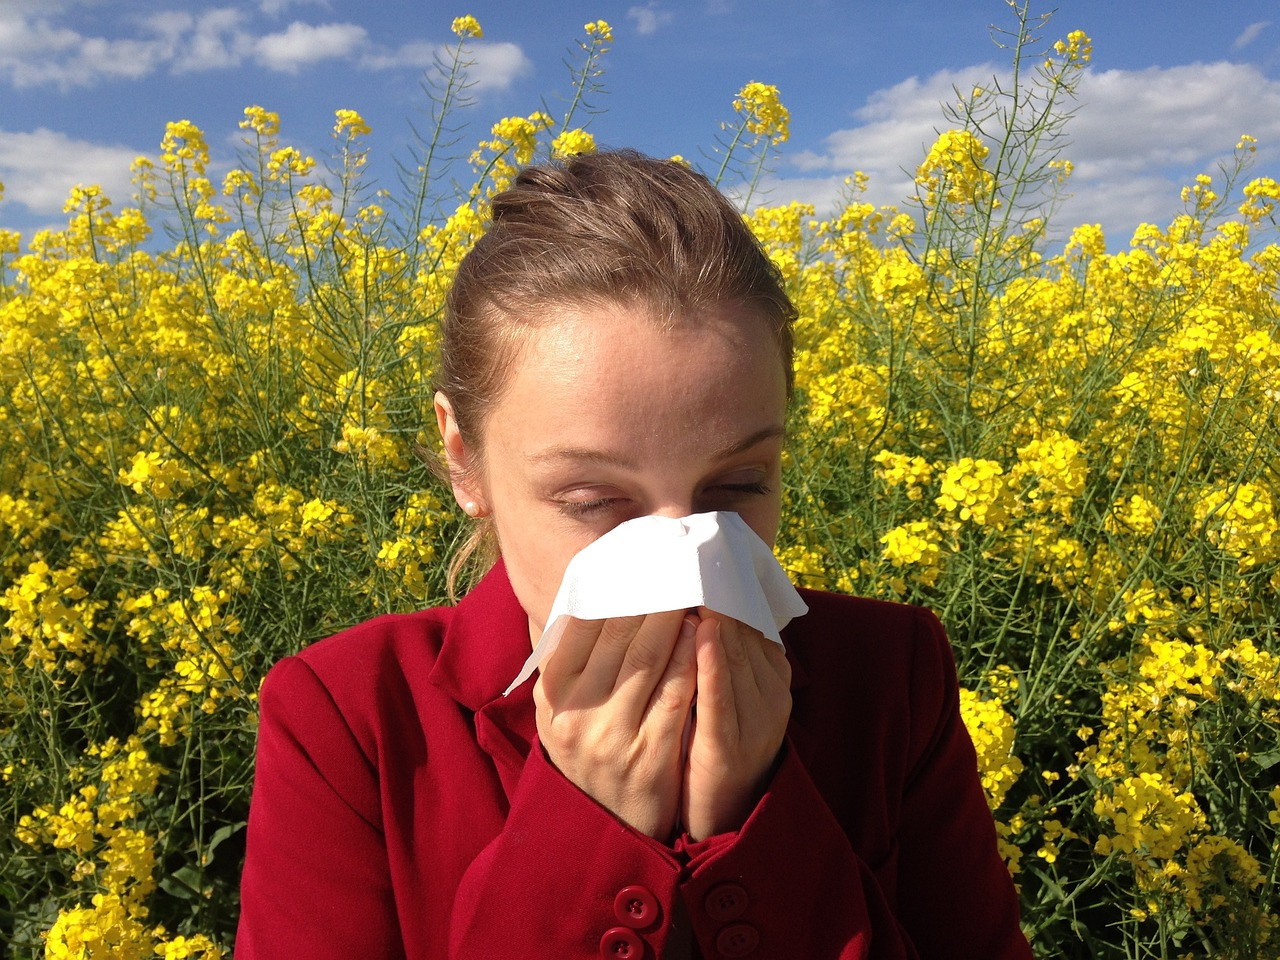  Reacciones alérgicas: síntomas, tipos y algunas de sus causas más comunes 